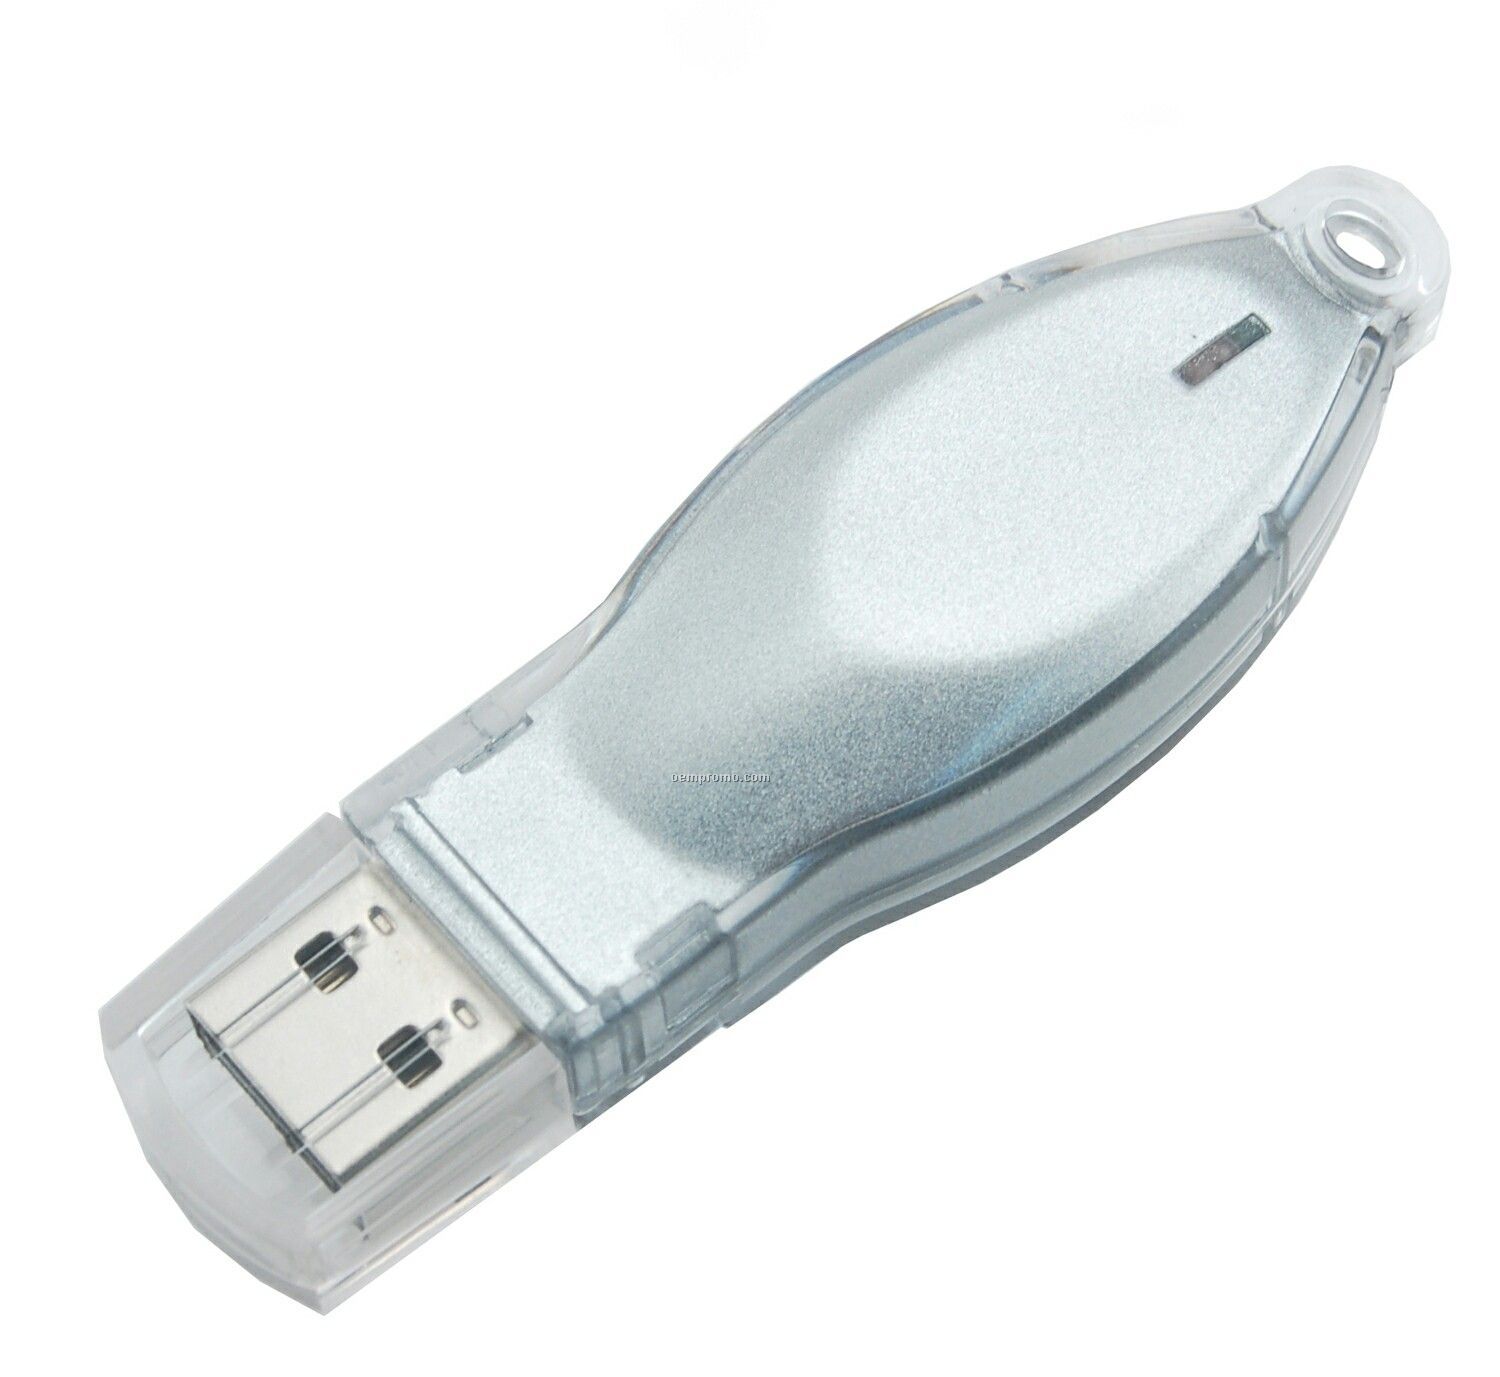 2 Gb Mosaic 200 Series USB Drive